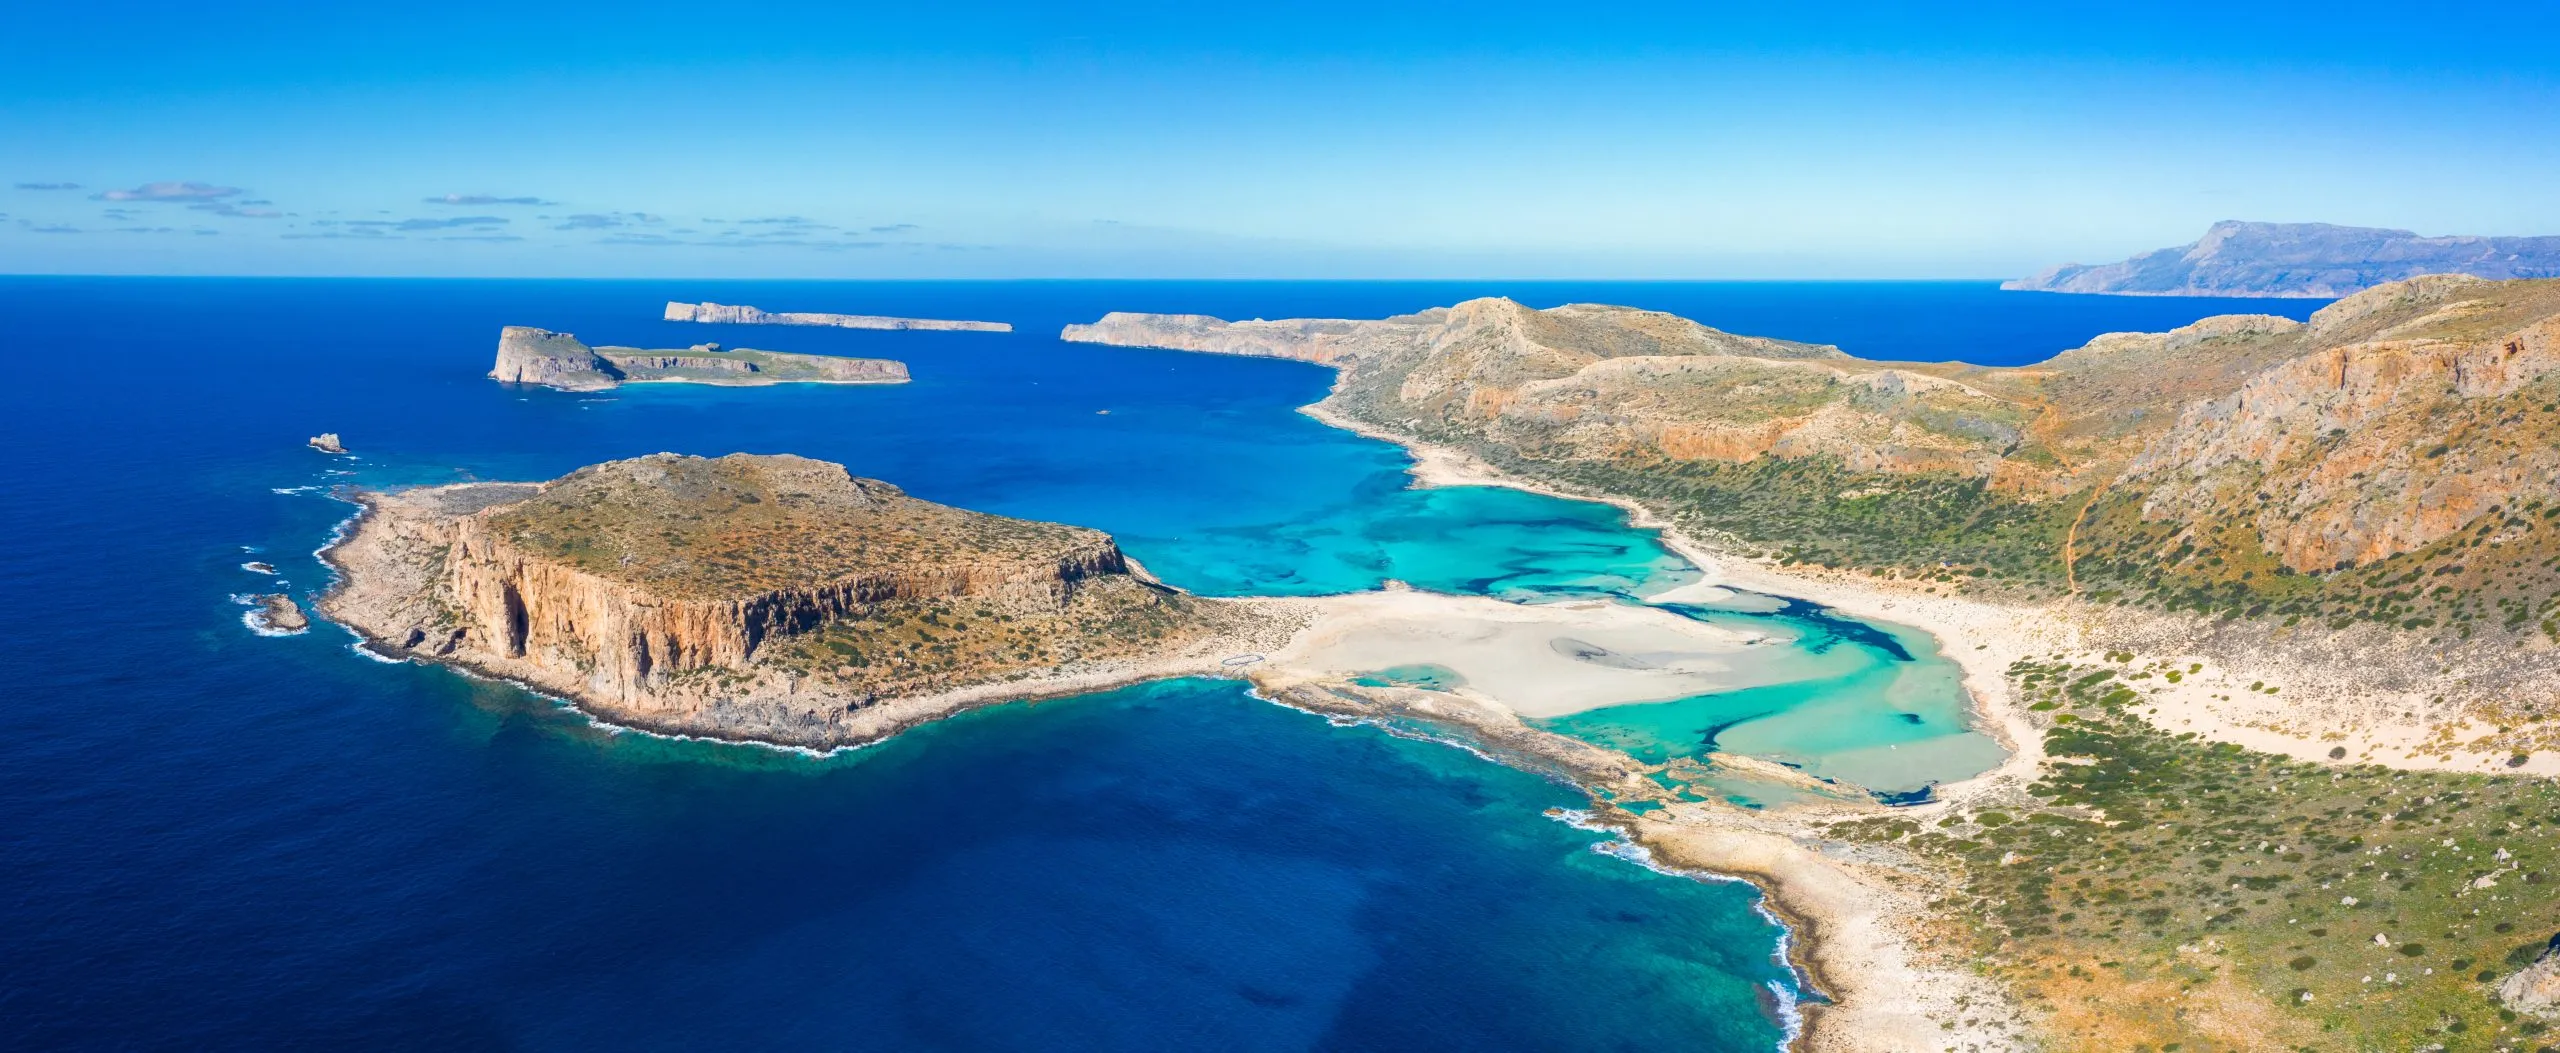 Erstaunlicher Blick auf die Lagune von Balos mit magischem türkisfarbenem Wasser, Lagunen, tropischen Stränden mit reinem weißen Sand und der Insel Gramvousa auf Kreta, Griechenland